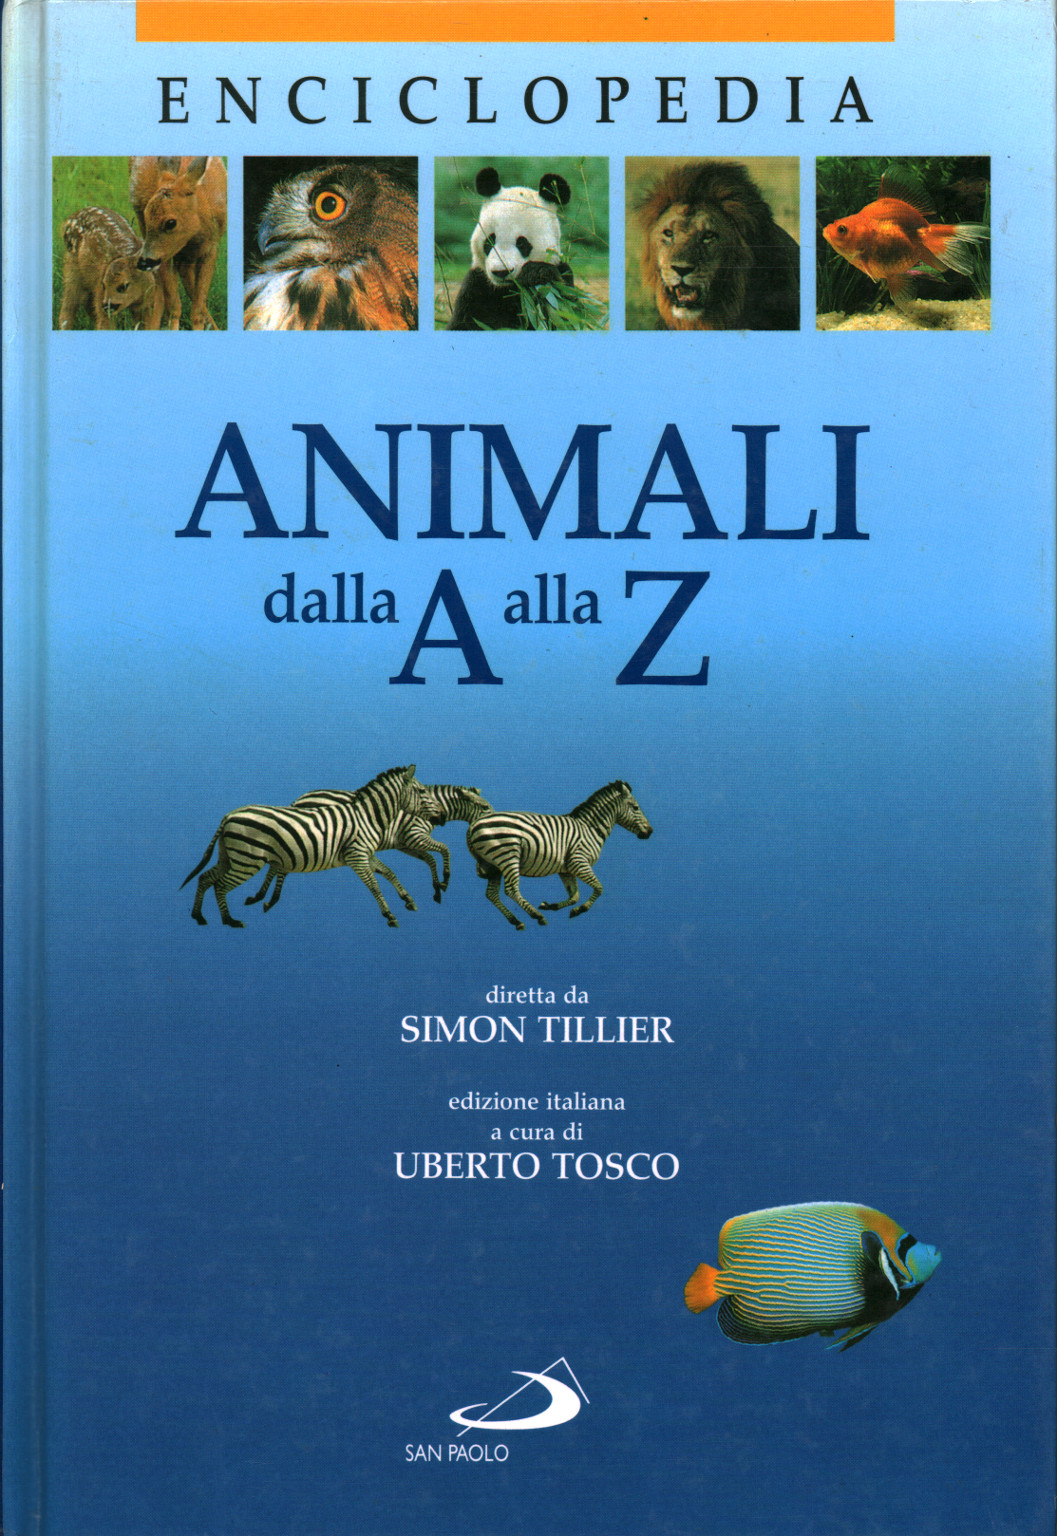 Los animales de la a A la Z, s.una.